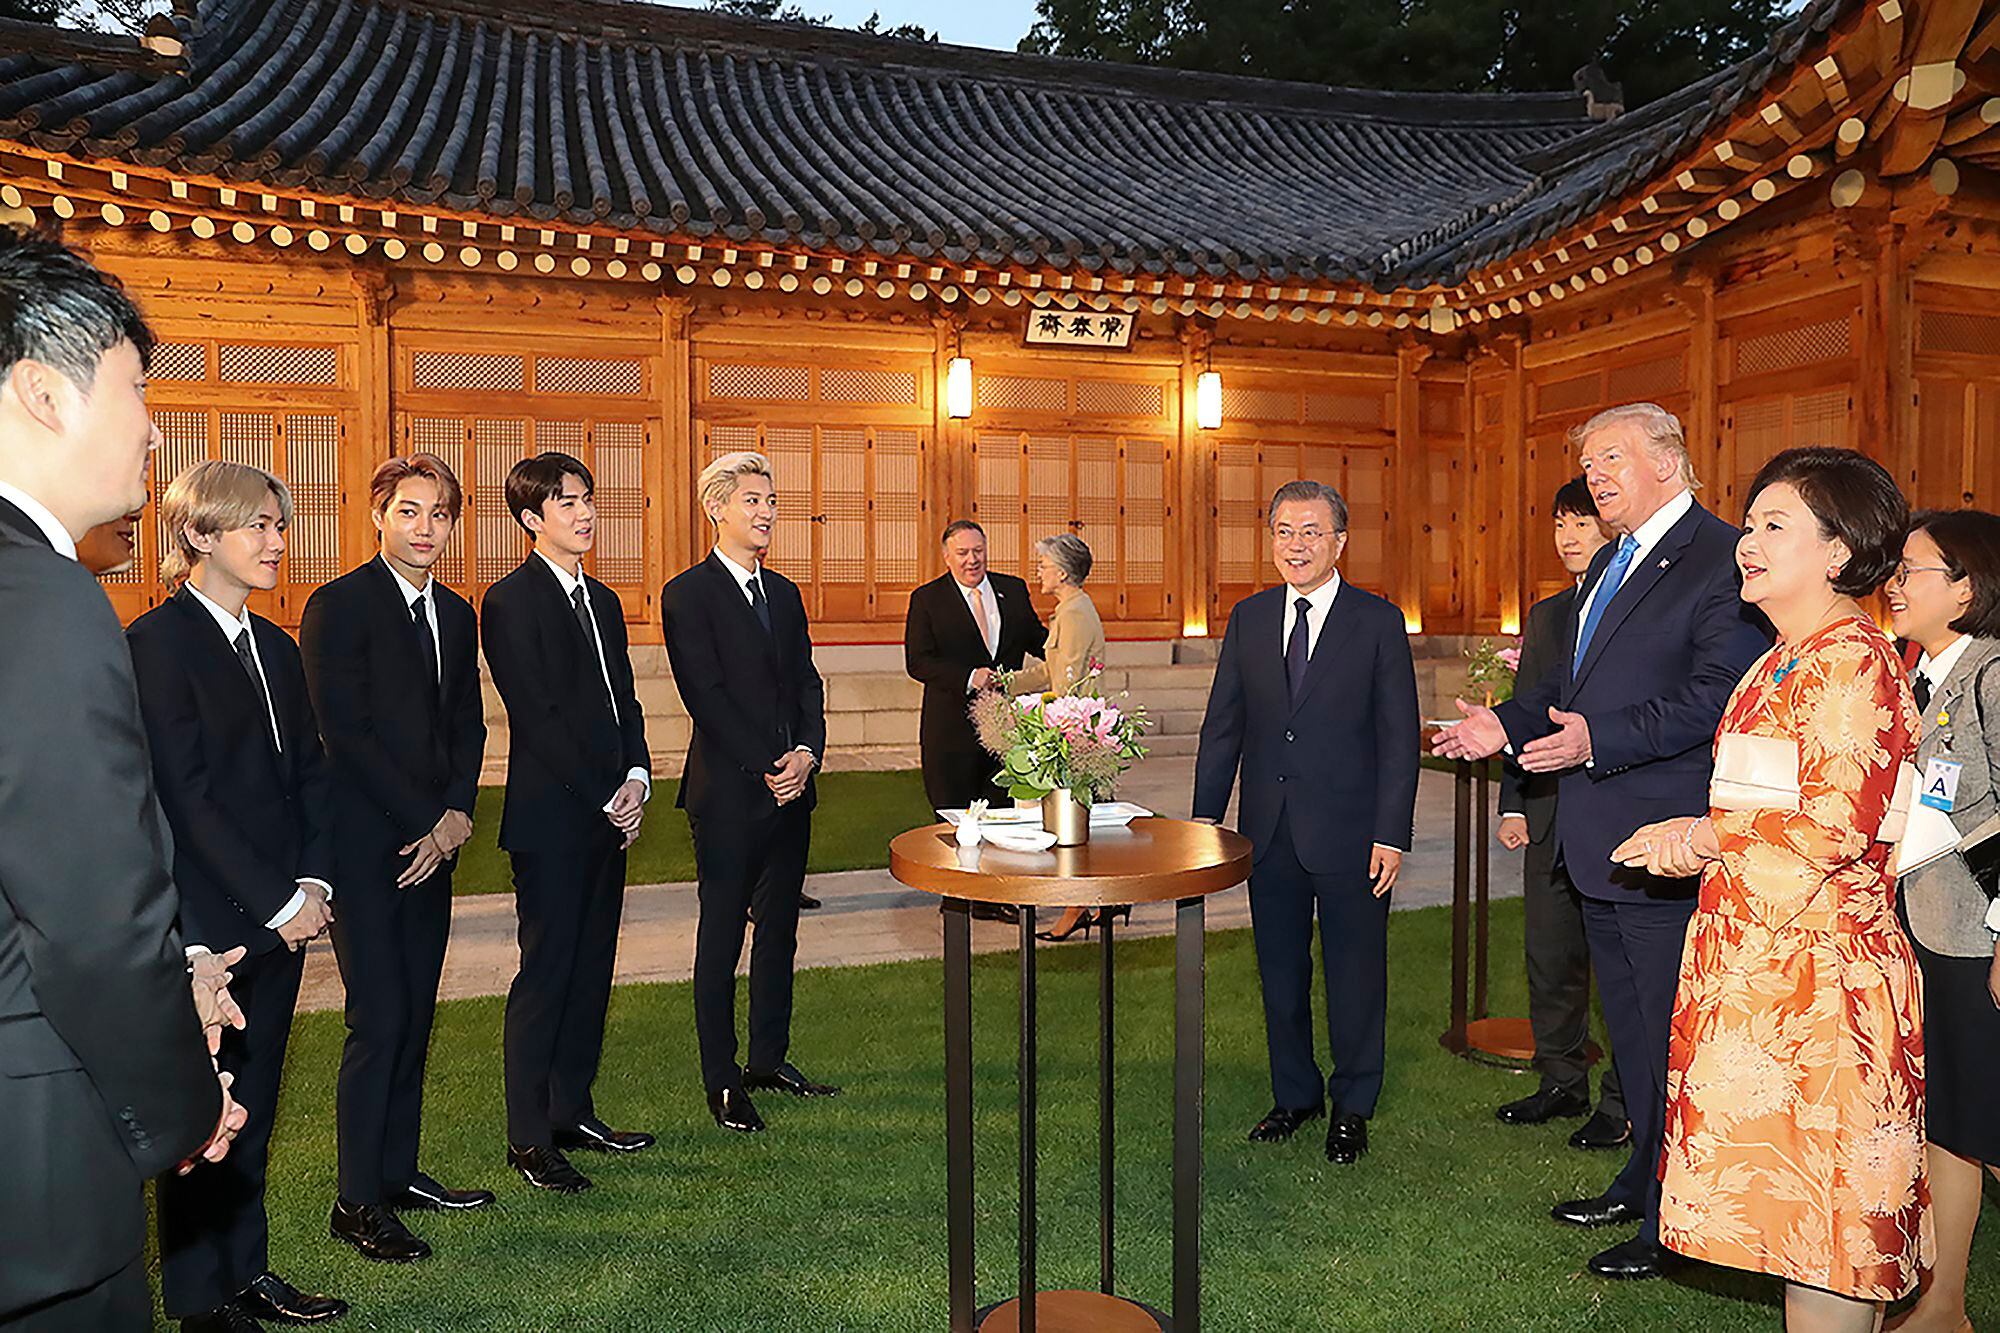 O presidente dos EUA, Donald Trump, conversa com a 'boy band' EXO durante uma visita presidencial à Coreia do Sul em 2019.